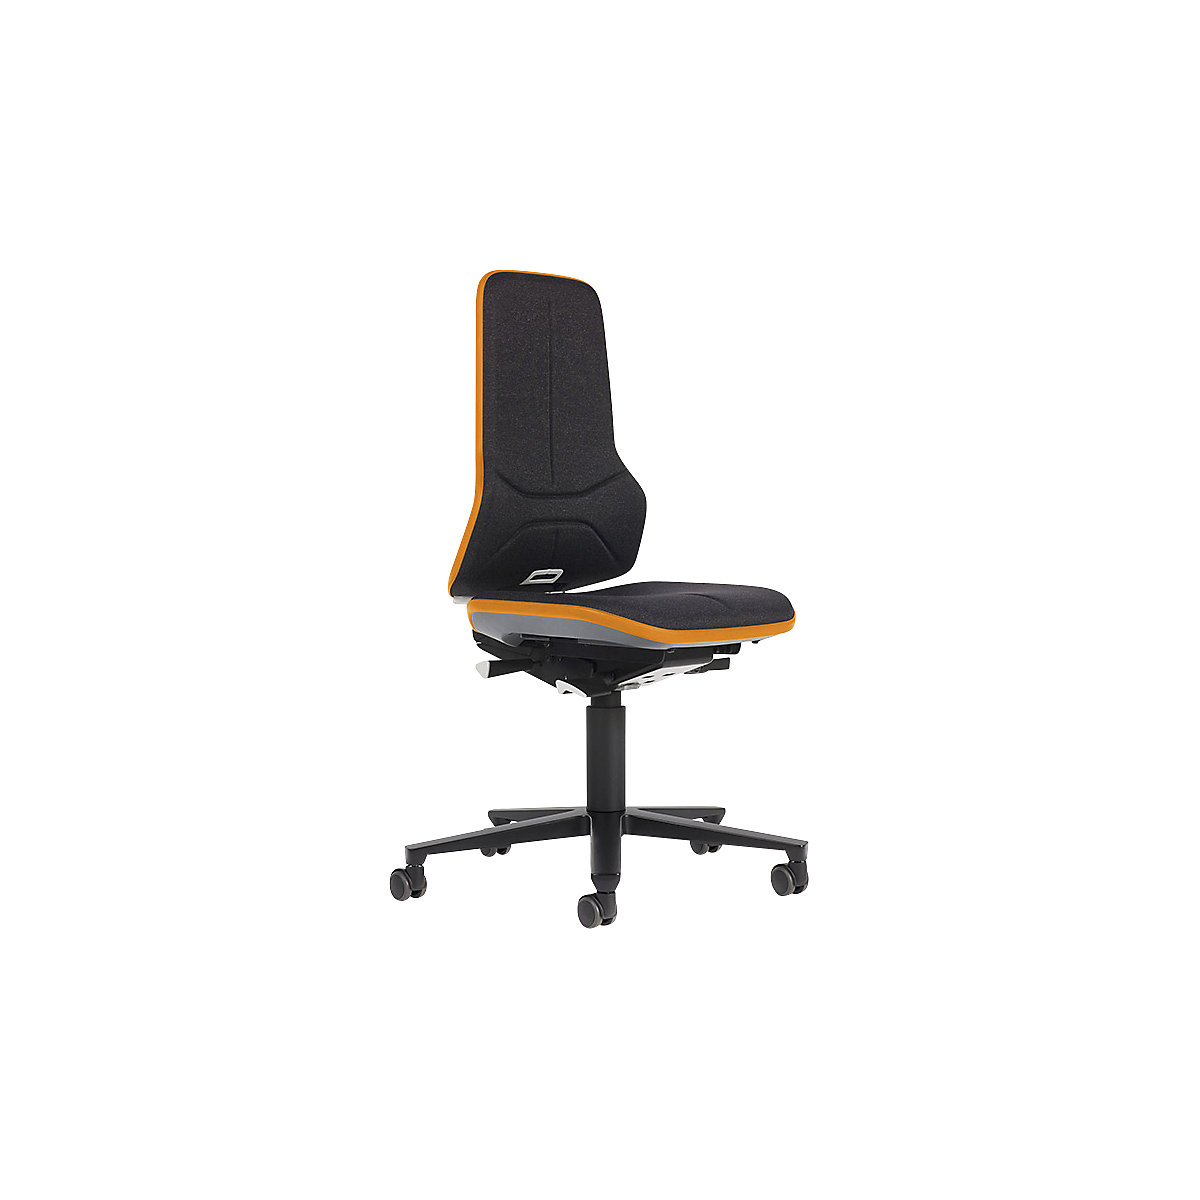 Pracovní otočná židle NEON, kolečka – bimos, synchronní mechanika, látka, oranžový flexibilní pás-9